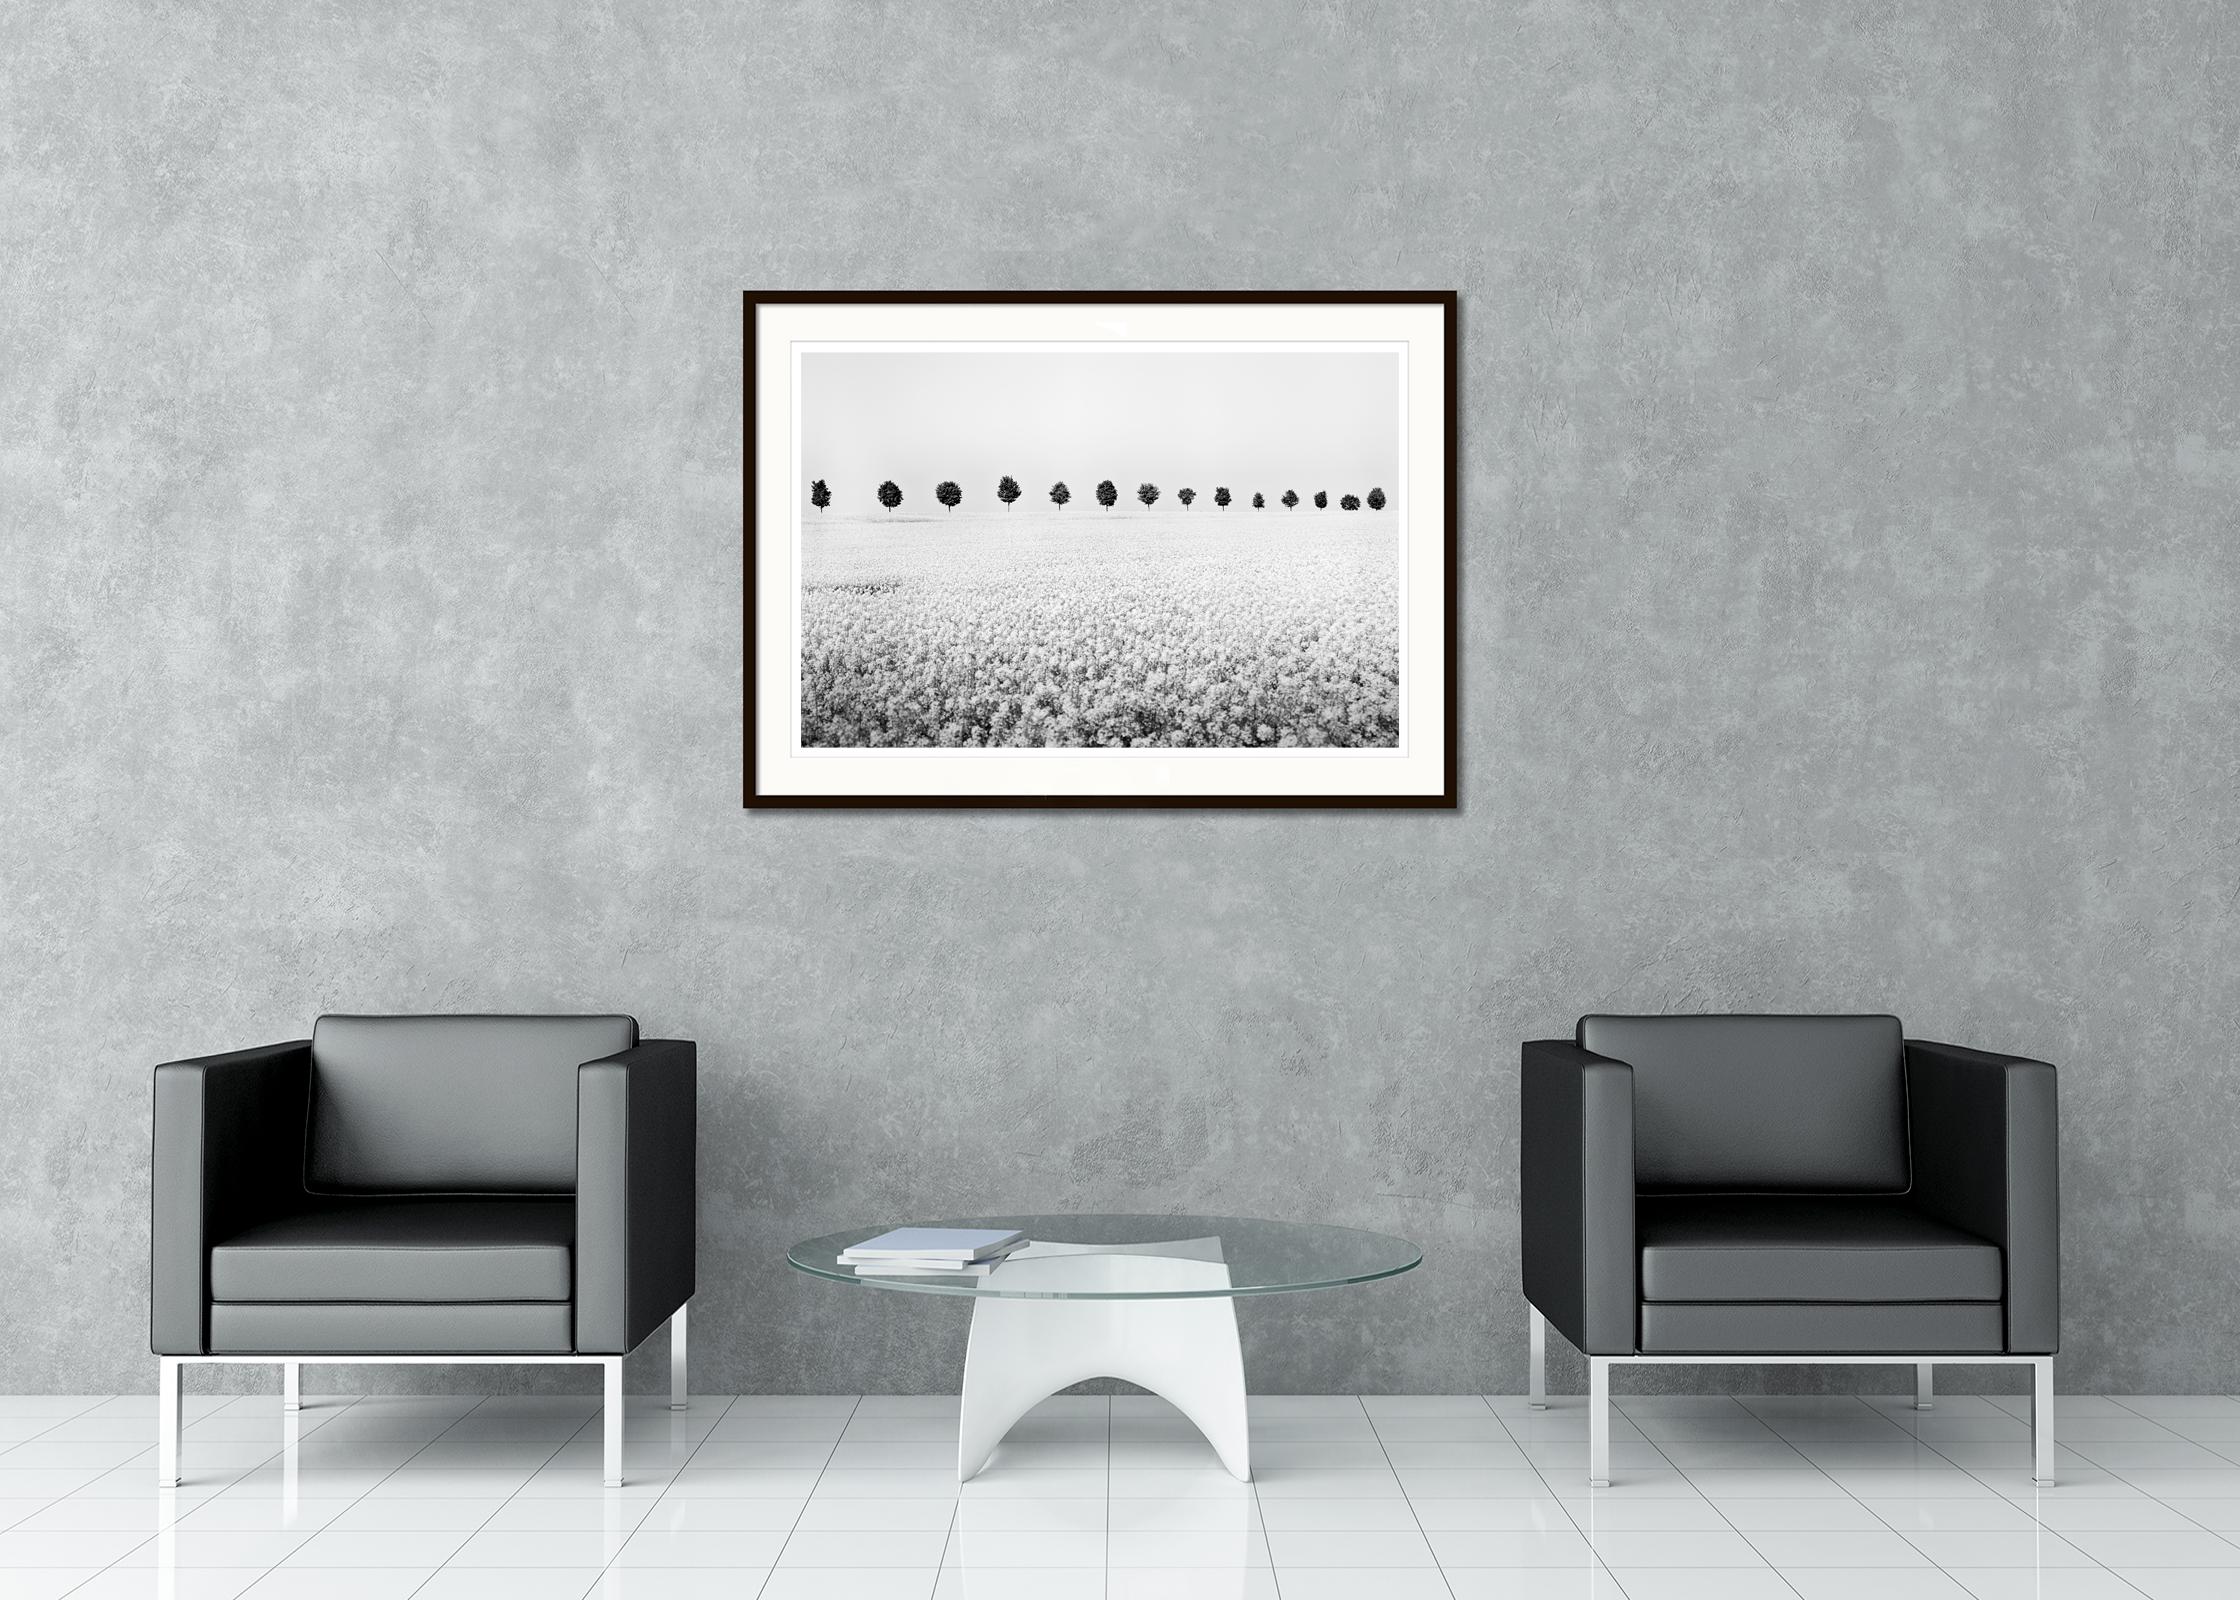 Schwarz-Weiß-Kunstdruck der minimalistischen Landschaftsfotografie. Rapsfeld mit einer Reihe von Bäumen, Frankreich. Pigmenttintendruck, Auflage 7, signiert, betitelt, datiert und nummeriert vom Künstler. Mit Echtheitszertifikat. Bedruckt mit einem